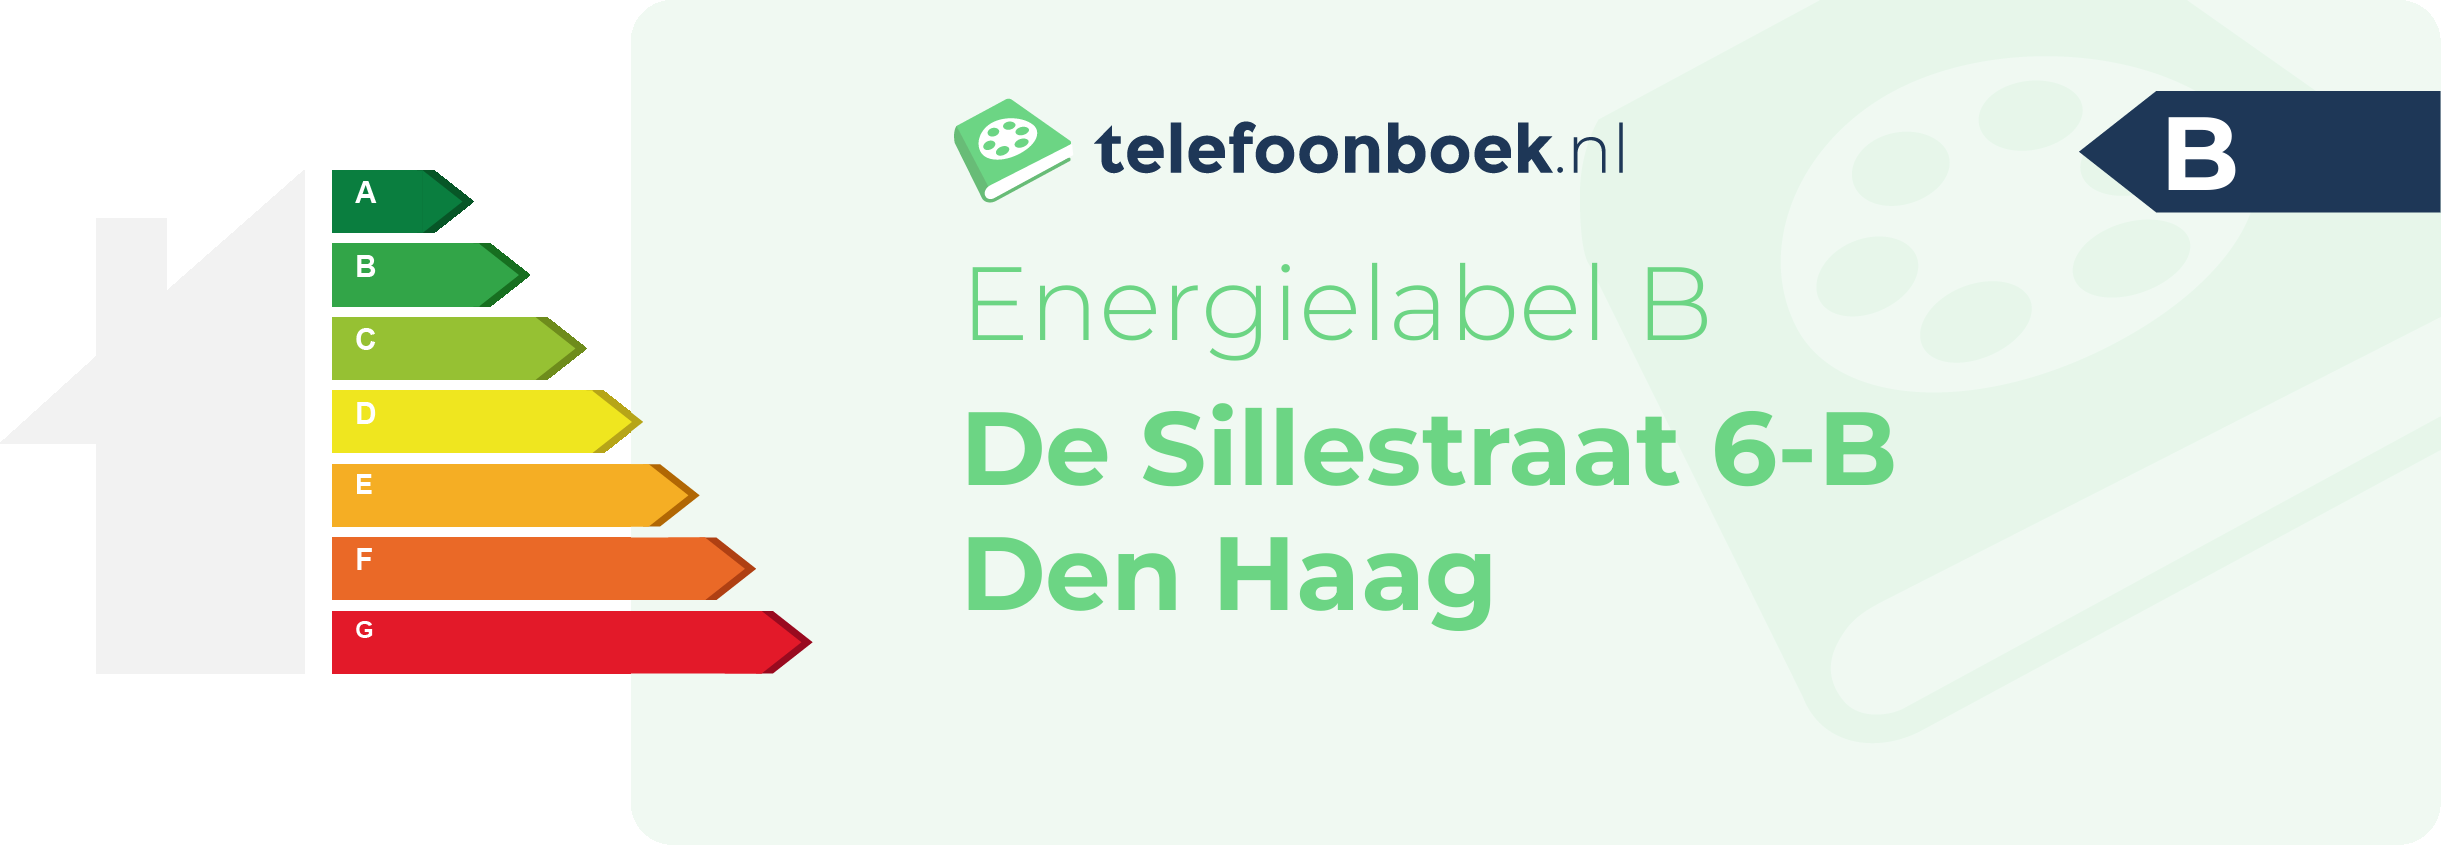 Energielabel De Sillestraat 6-B Den Haag